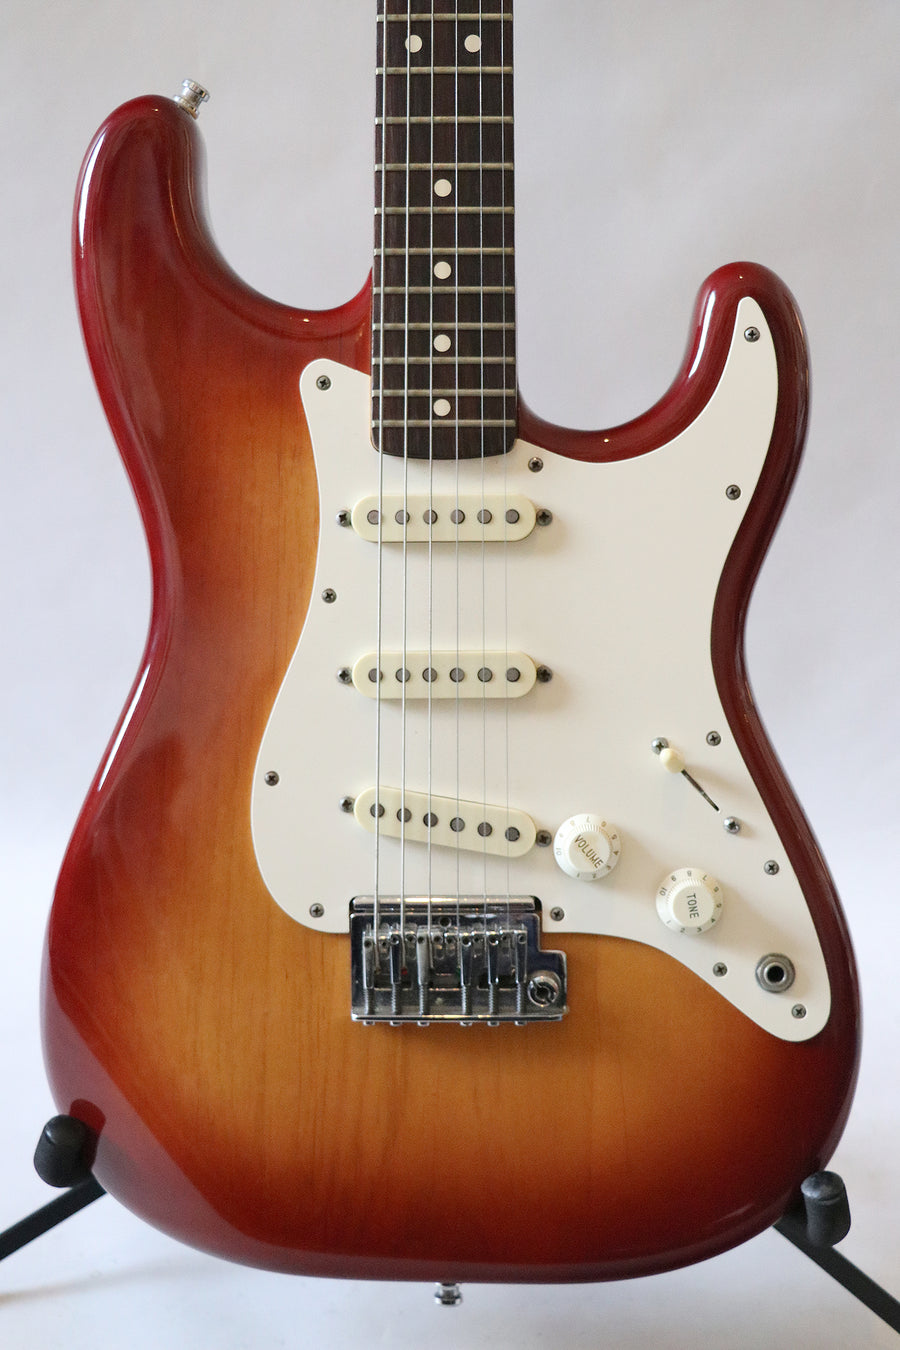 Fender Stratocaster 1983